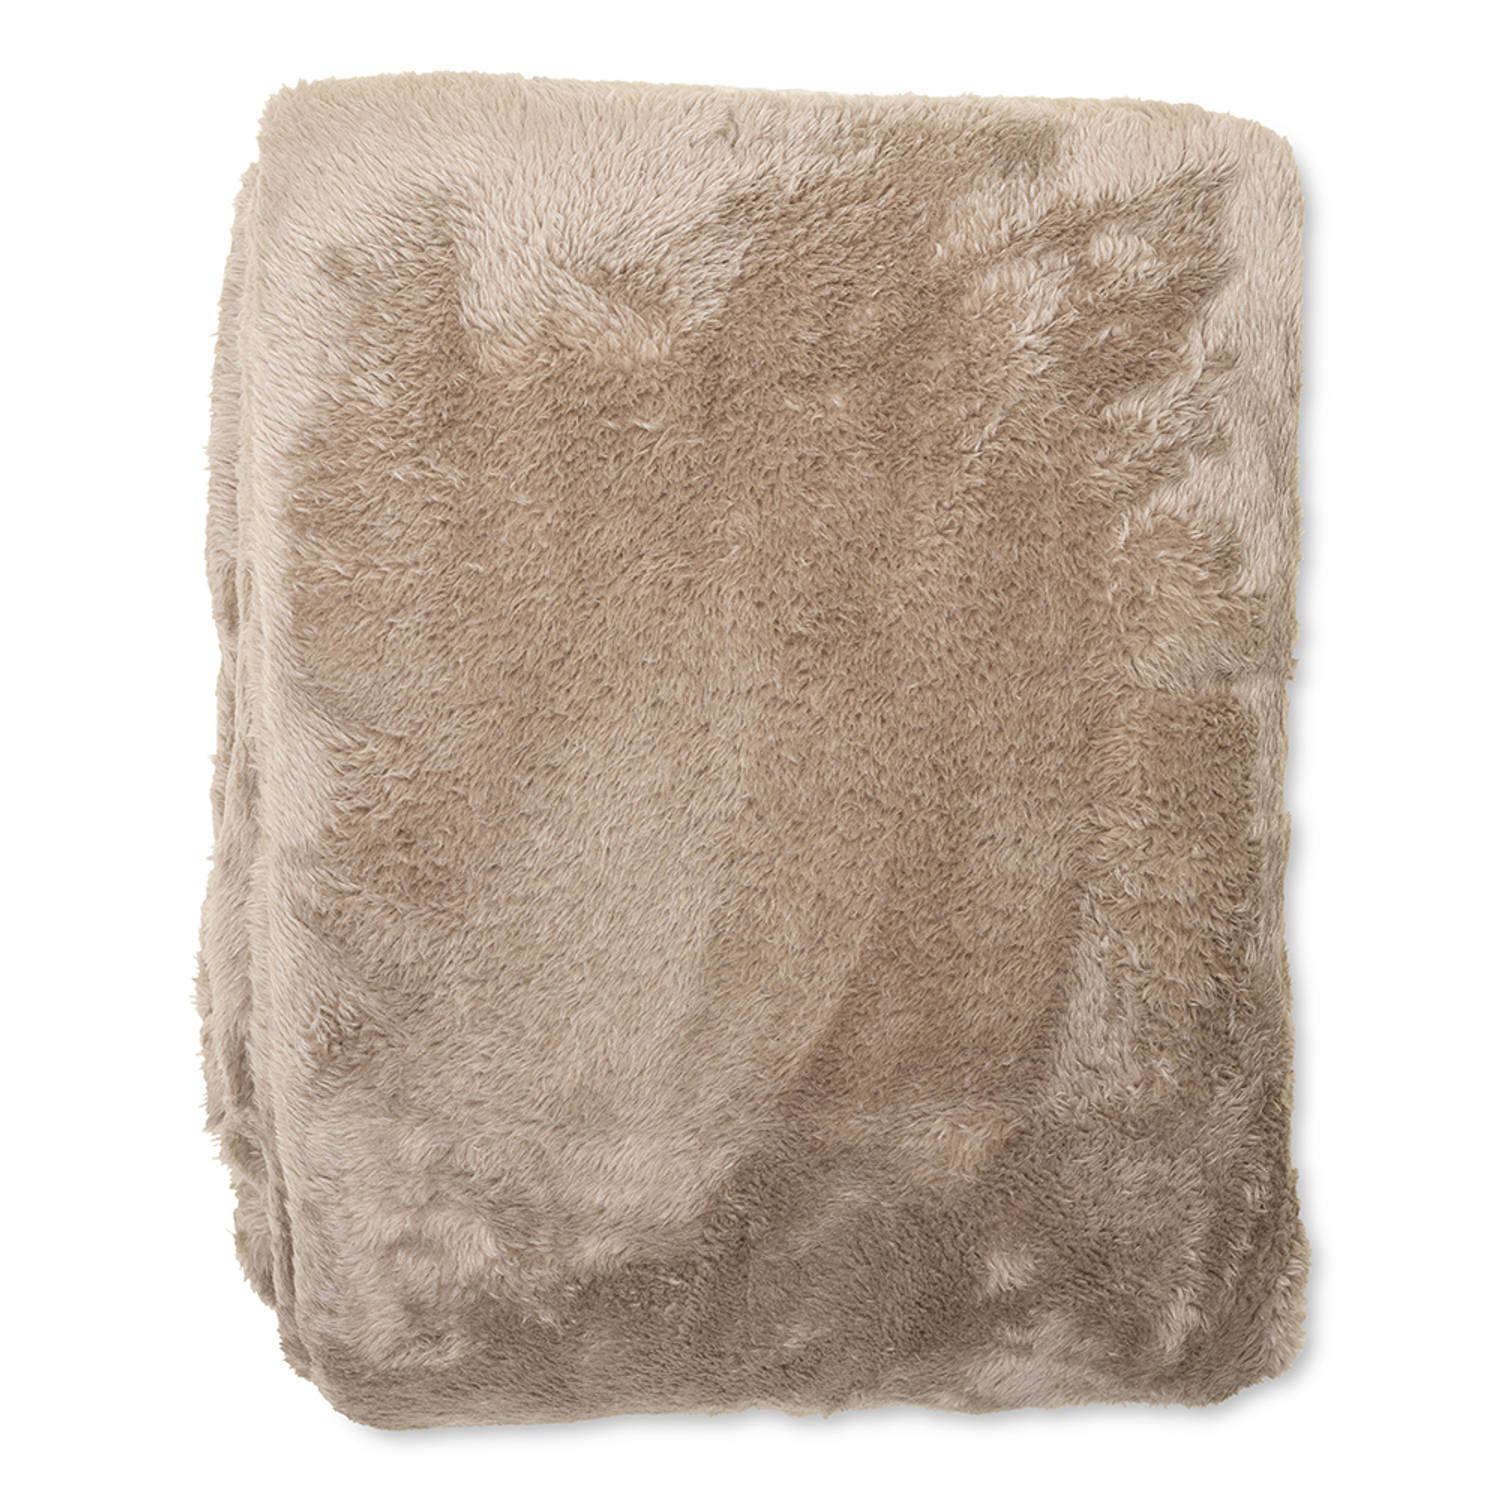 Wicotex-Plaid-deken-fleece plaid Fluffy taupe 150x200cm-Zacht en warme Fleece deken.